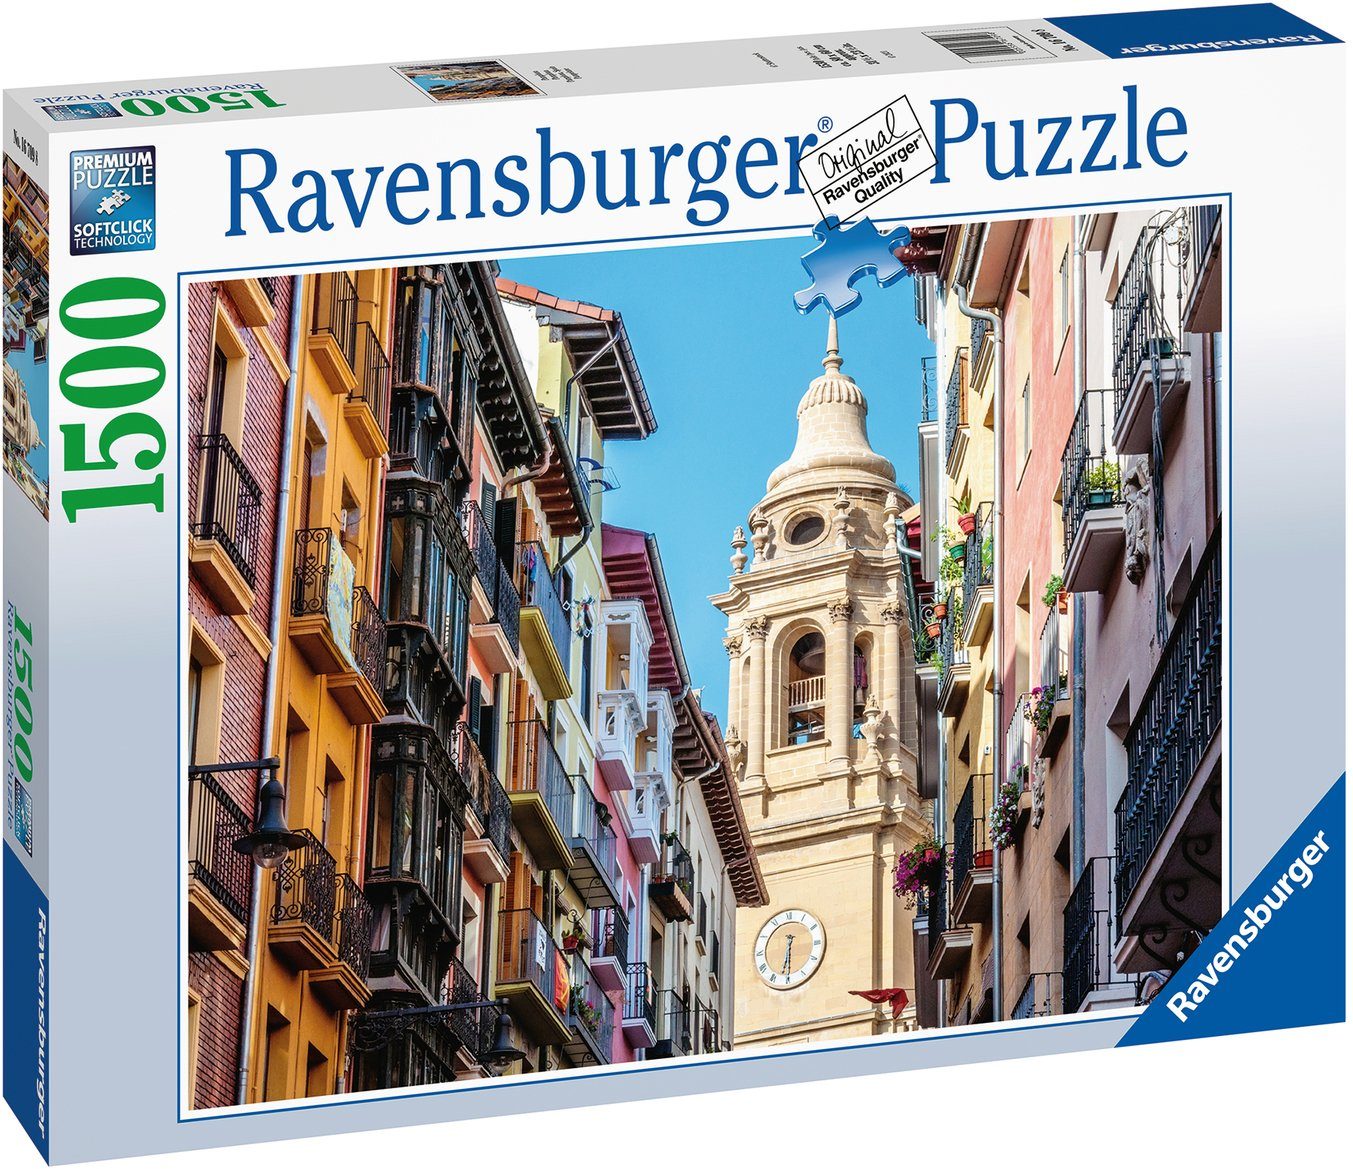 Wald FSC® Ravensburger weltweit Made in 1500 Puzzle - Germany, - schützt Pamplona, Puzzleteile,